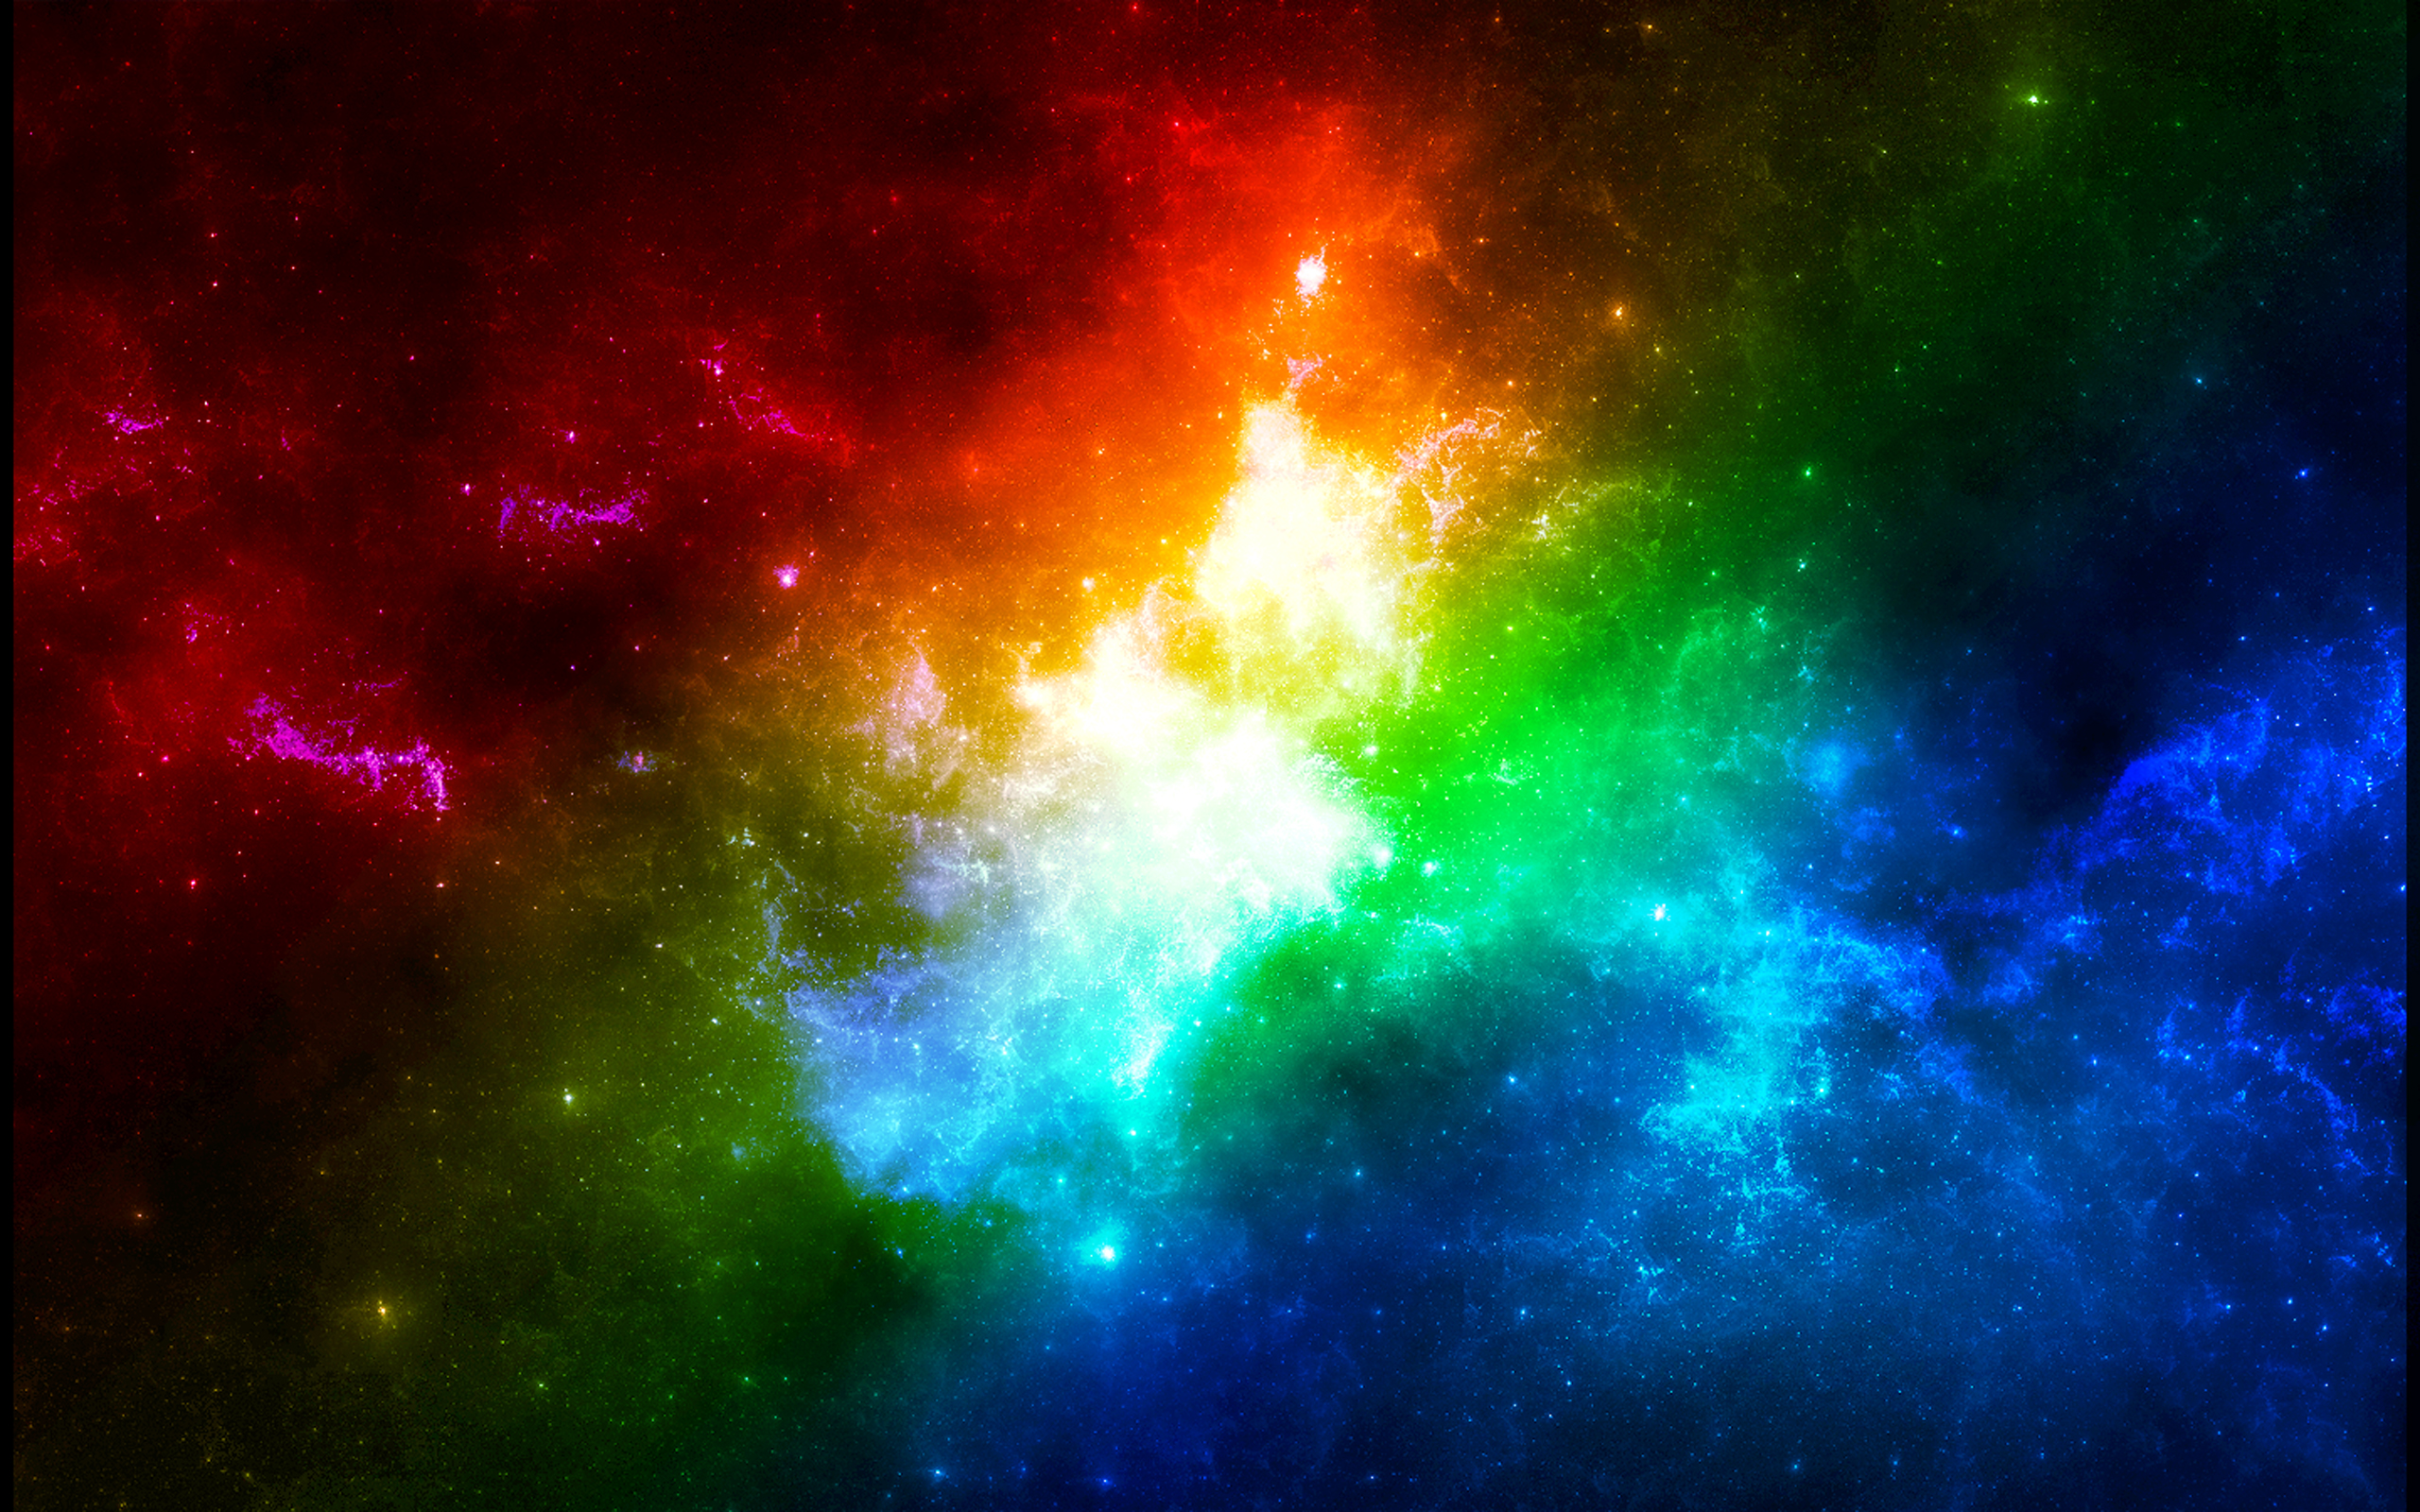 Tận hưởng nét đẹp của vũ trụ không giới hạn với những hình ảnh nền thiên hà đầy màu sắc. Chỉ cần một lần nhìn, bạn sẽ bị lôi cuốn vào những khung cảnh độc đáo và đầy cảm hứng.